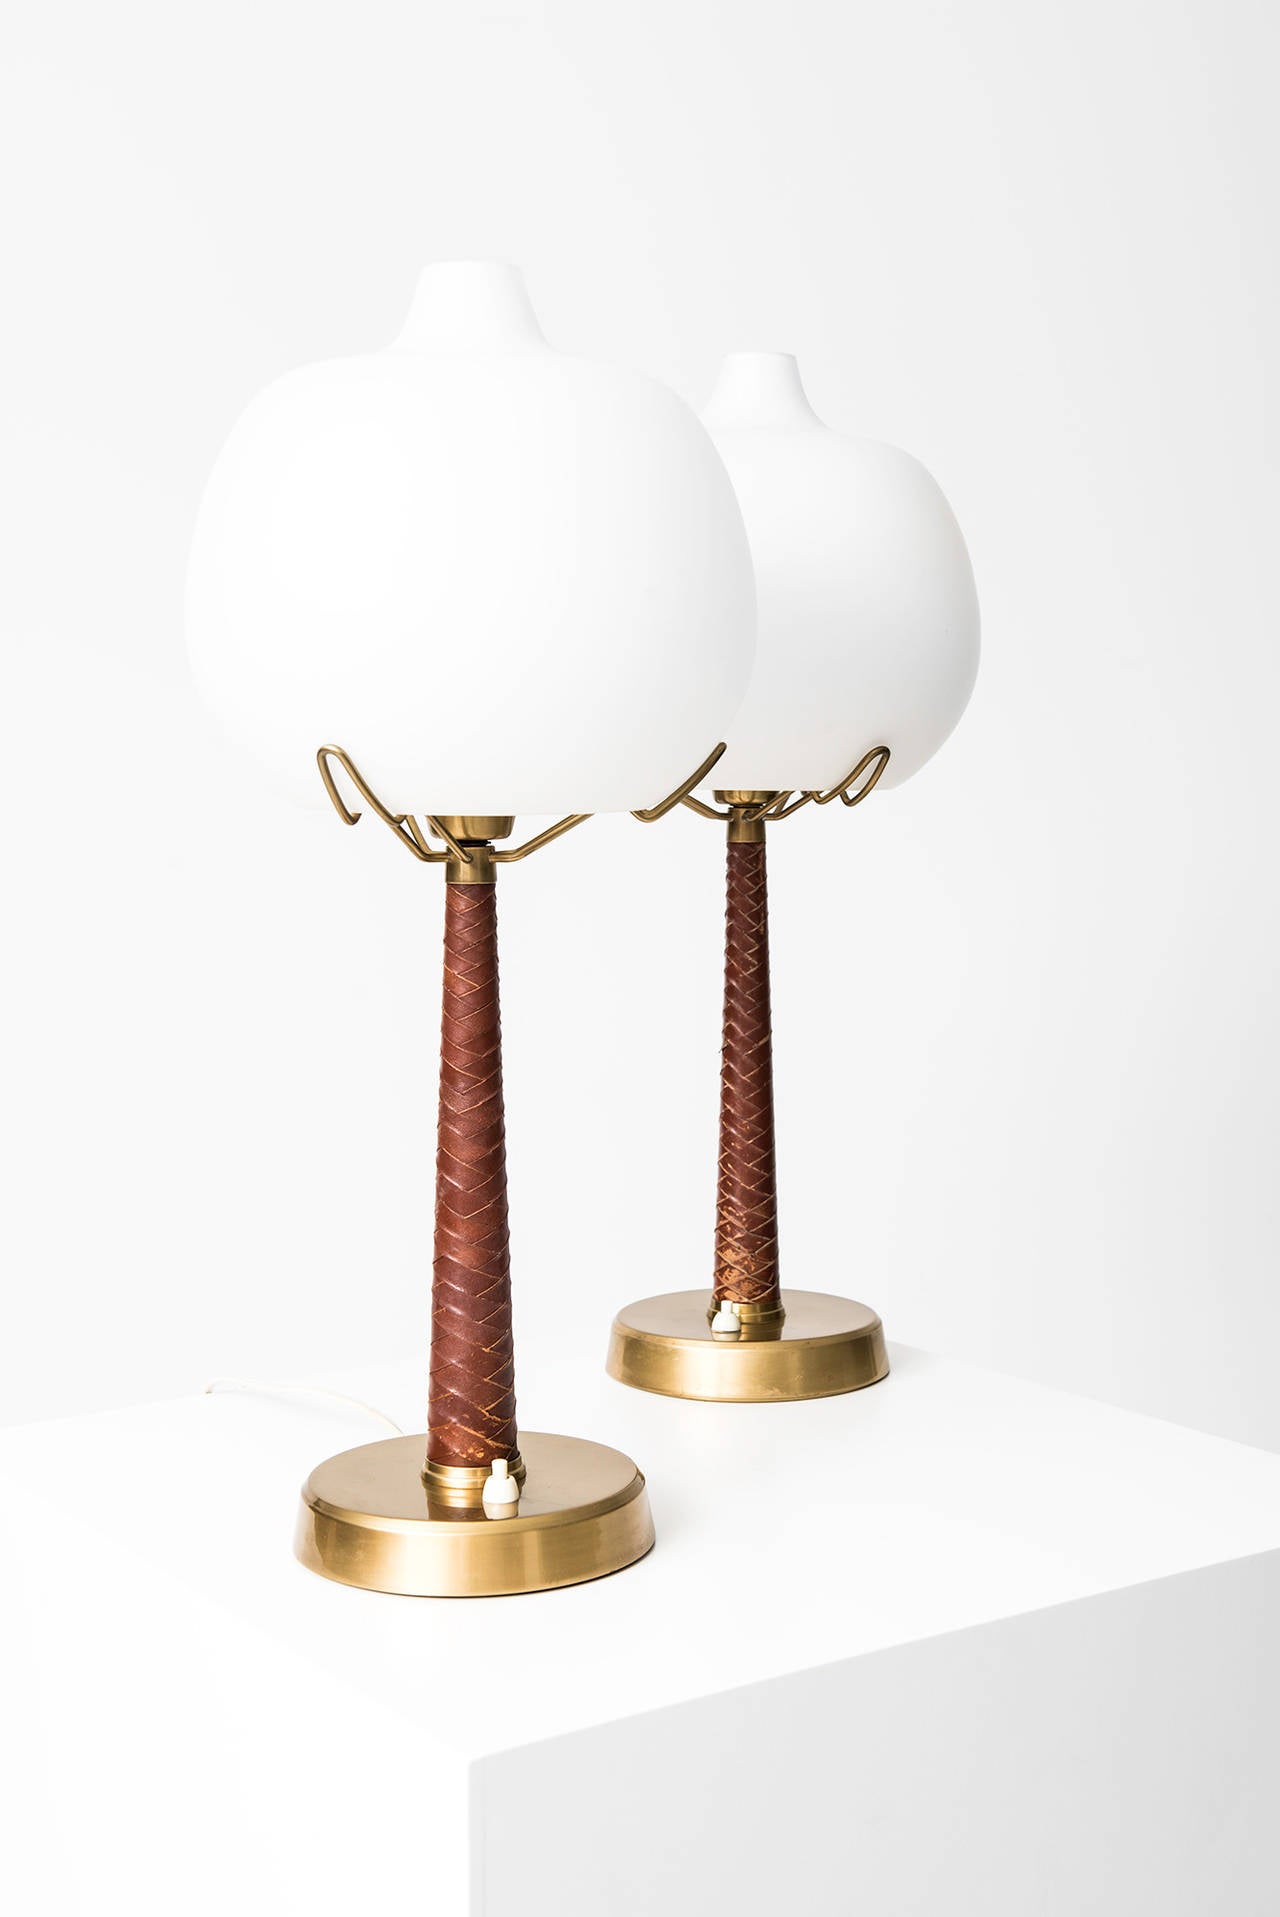 Mid-Century Modern Hans Bergström table lamps model 700 by Ateljé Lyktan in Sweden